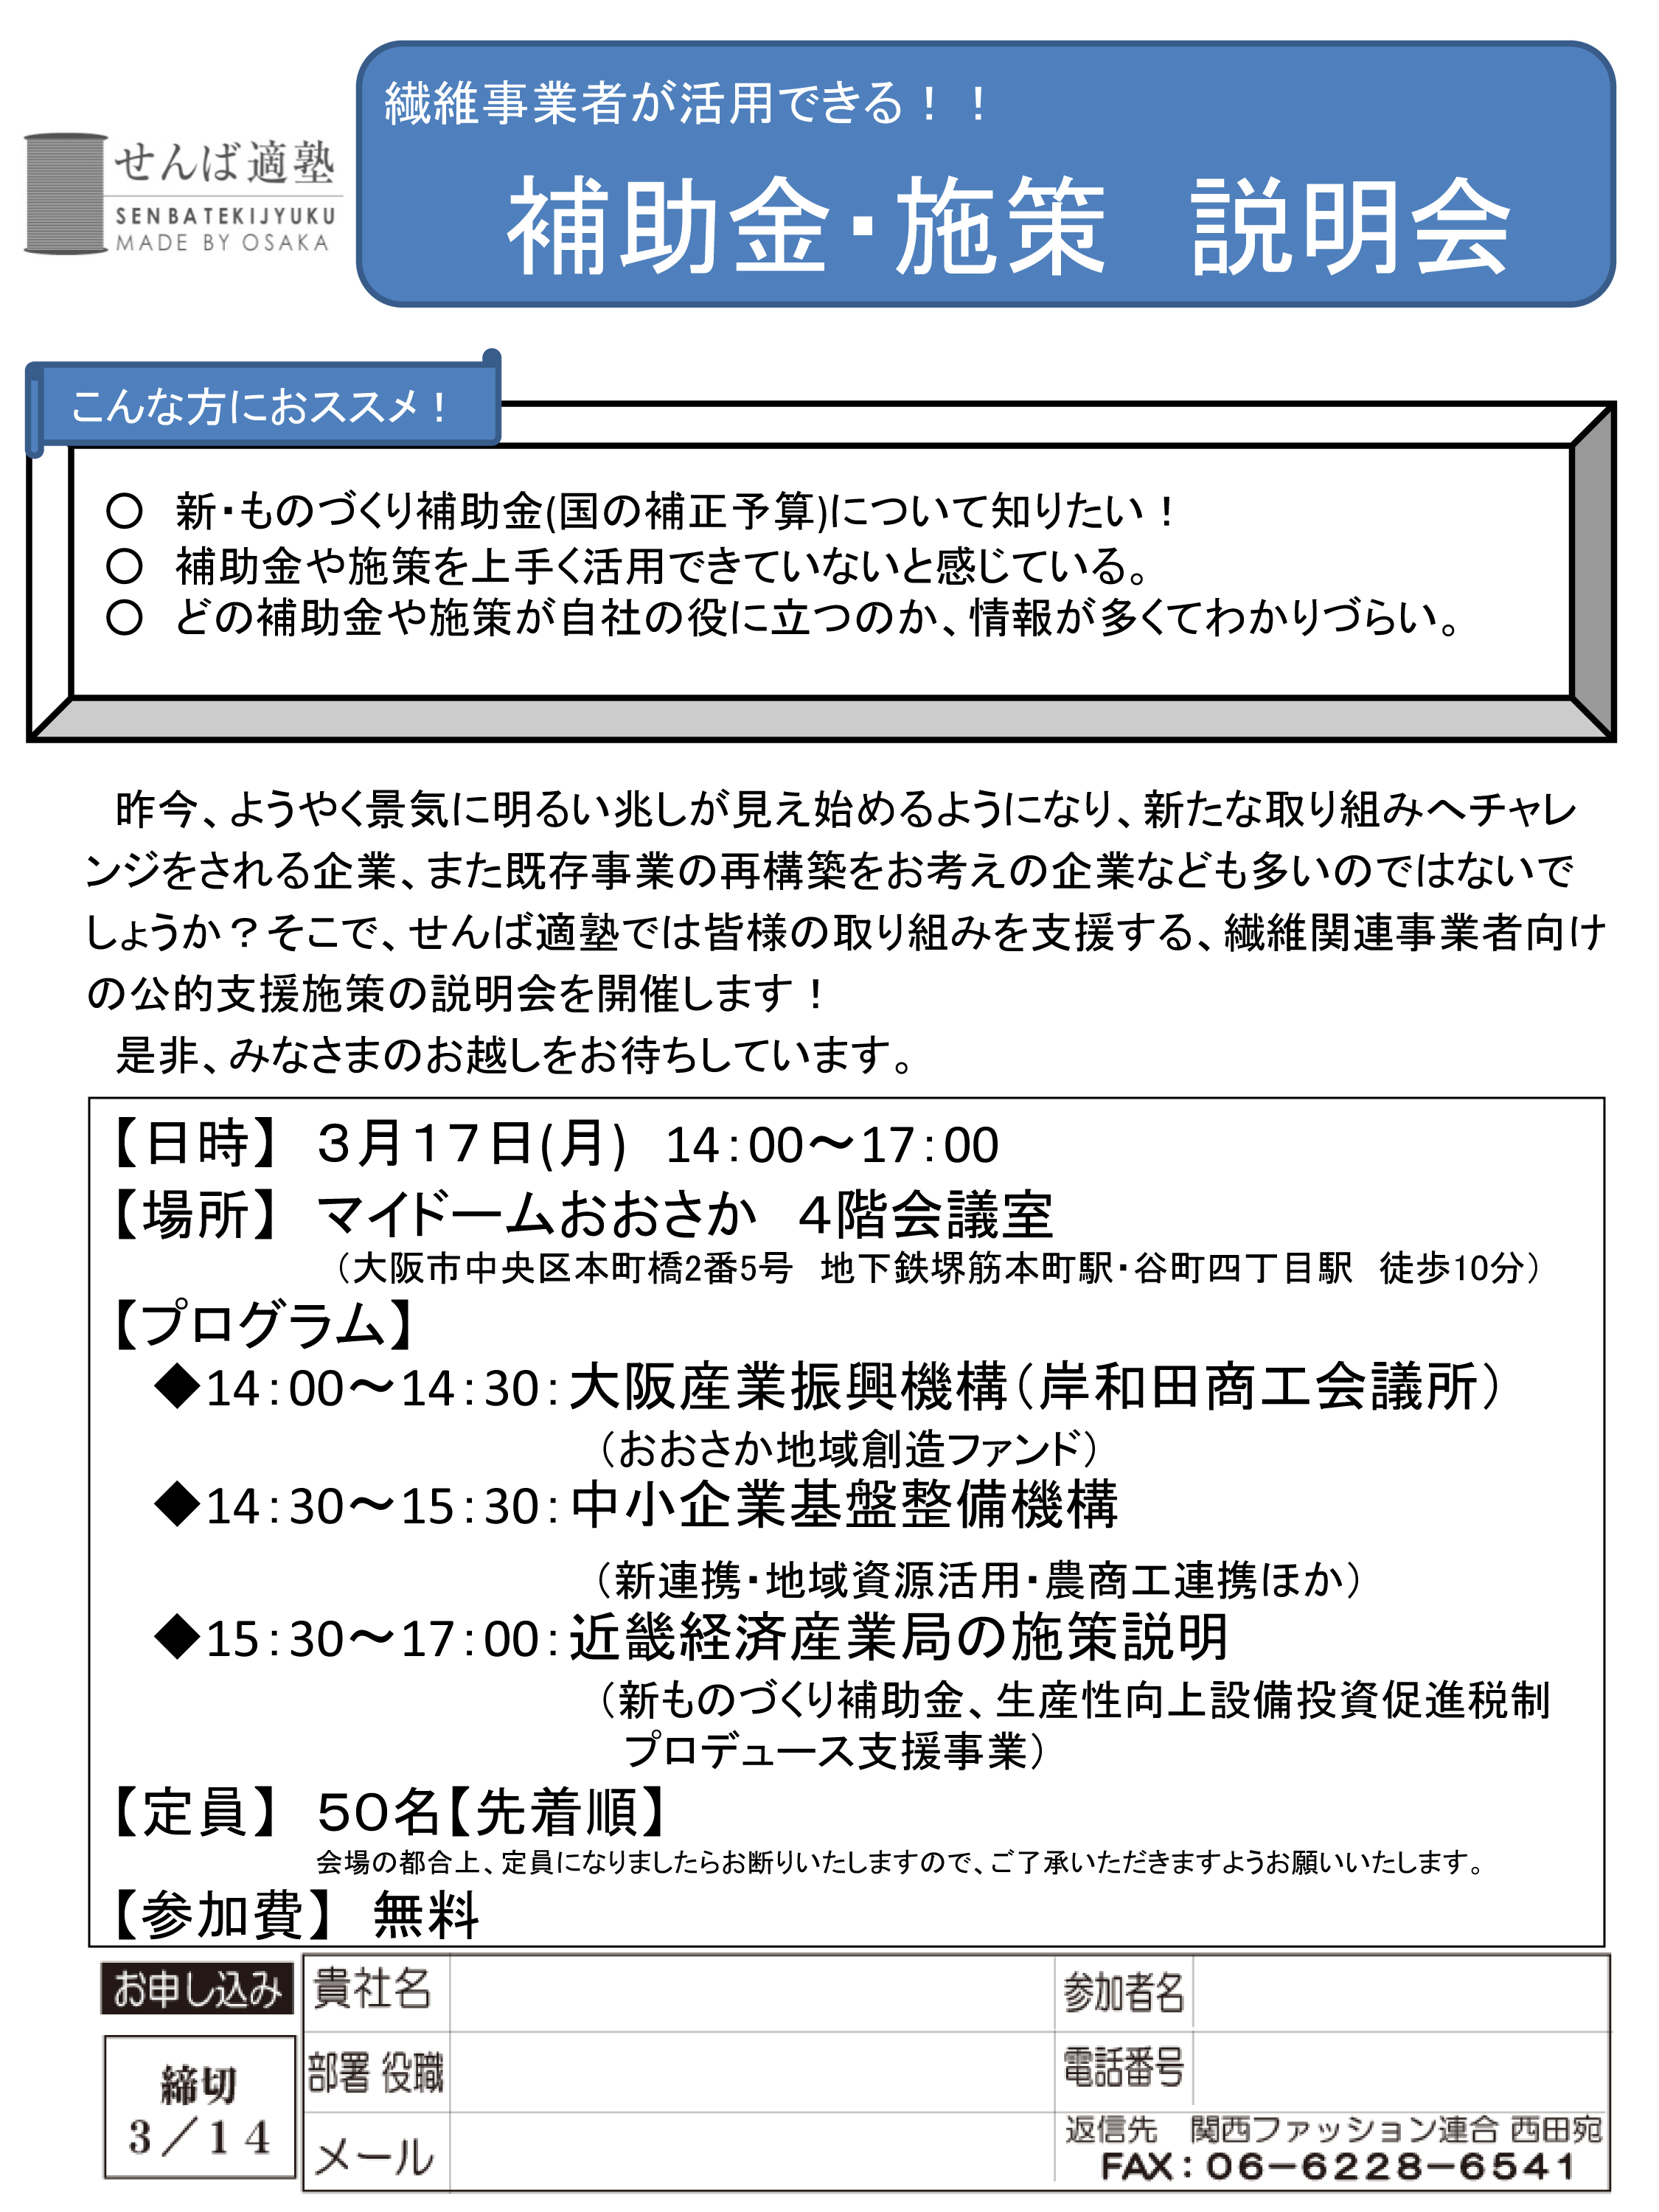 【2014/3/17 開催】施策説明会